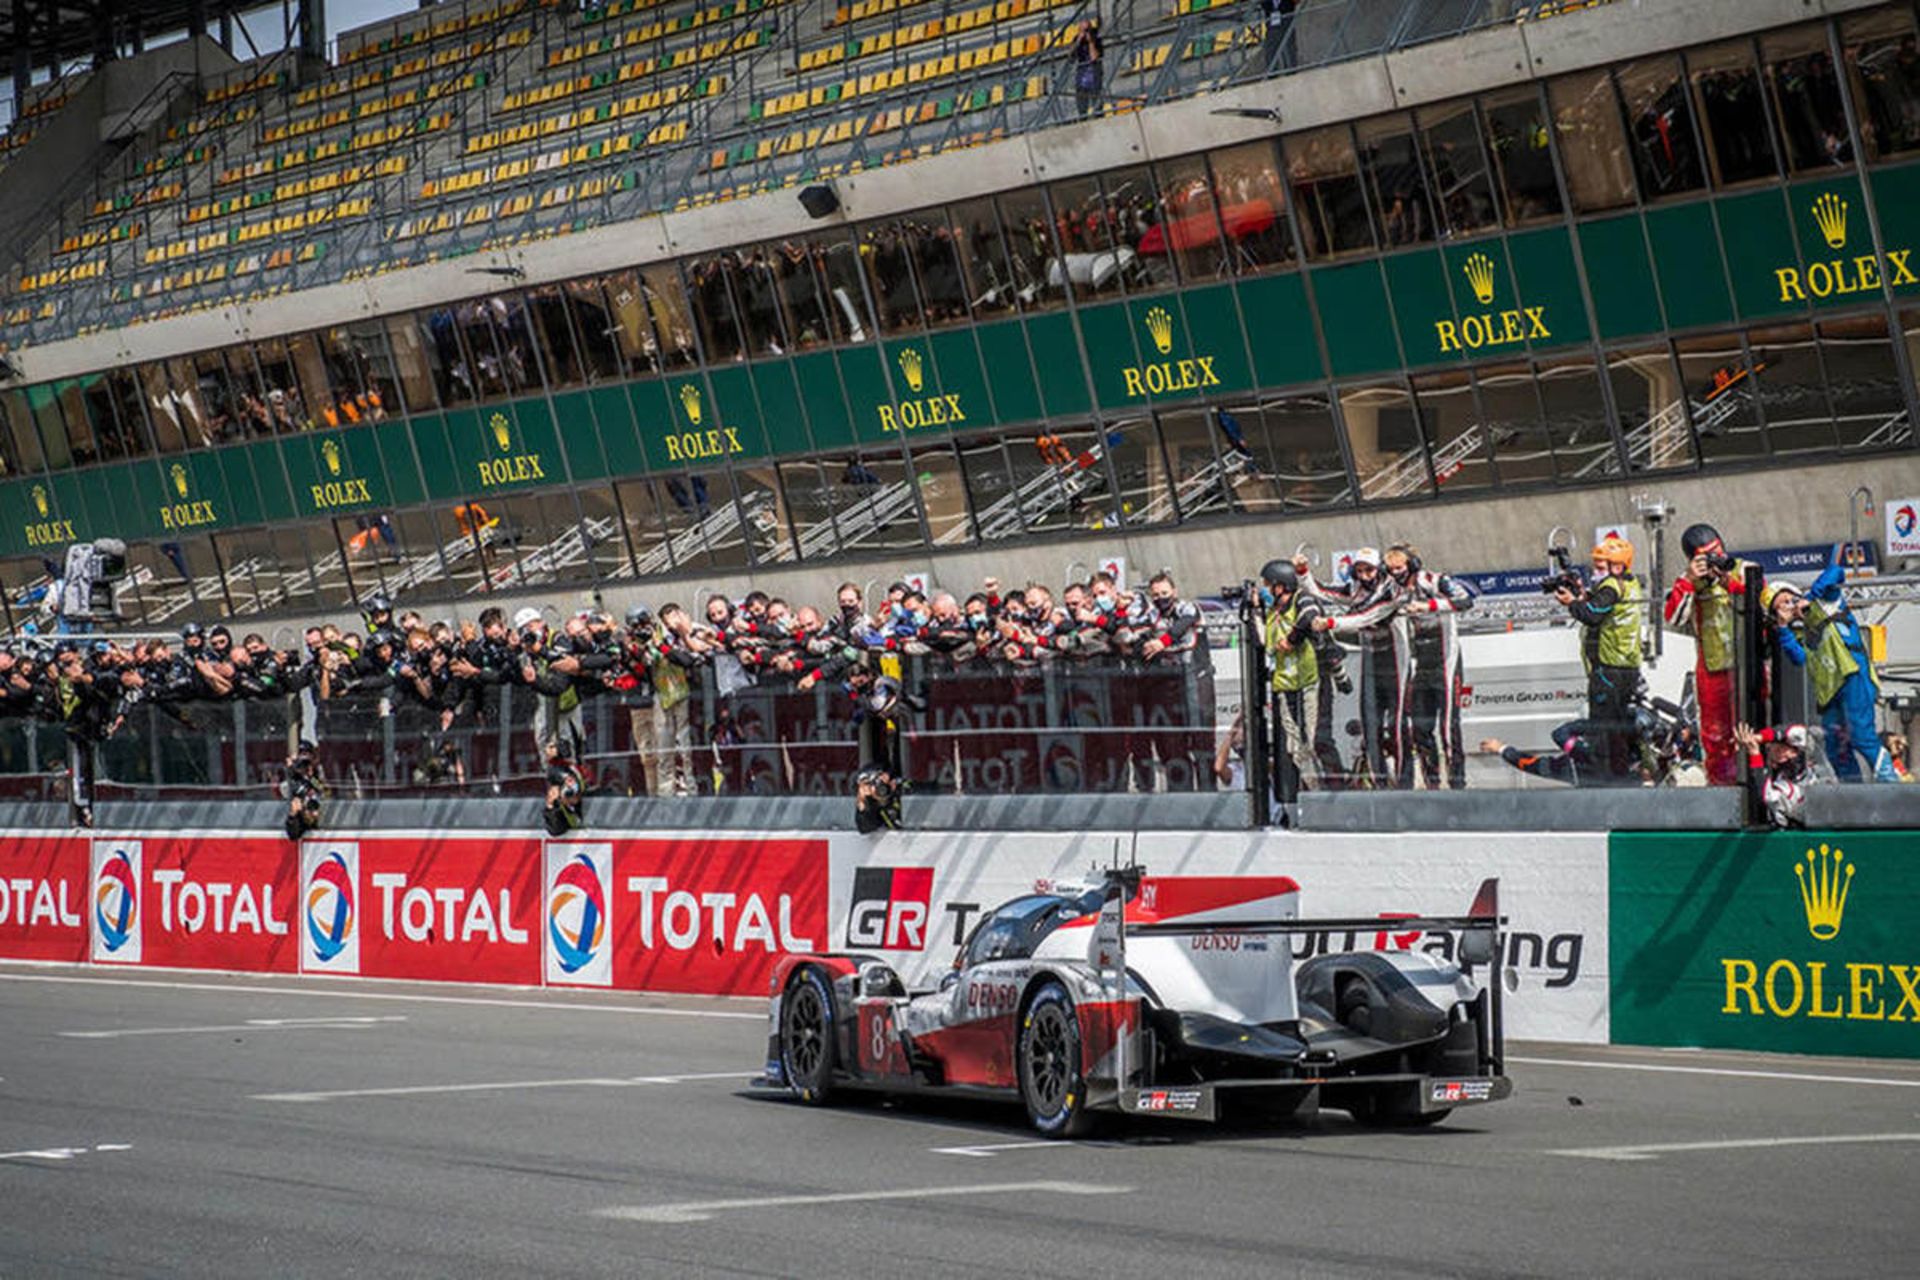 مرجع متخصصين ايران خودرو تيم تويوتا گازو ريسينگ / Toyota در سري مسابقات لمان / Le Mans